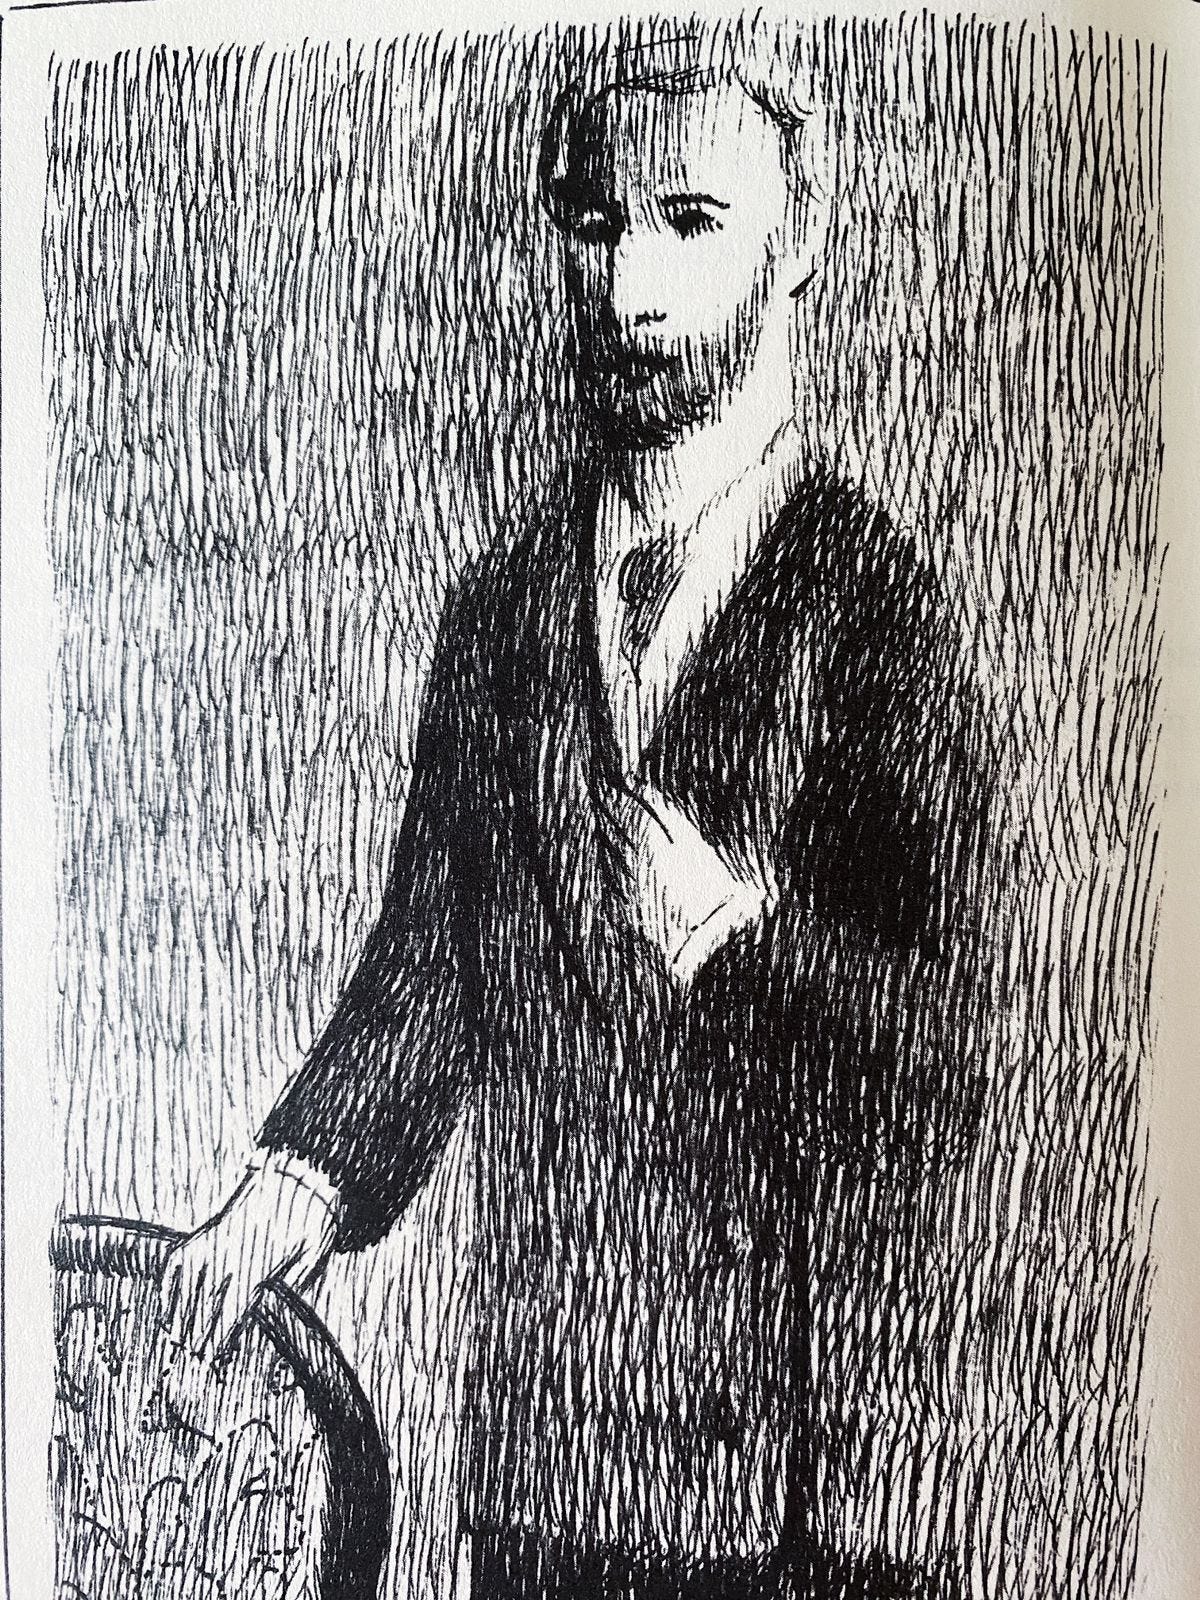 Ilustração hachurada em preto e branco de um homem posando para uma foto ao lado de uma cadeira. Ele usa barba e leva a mão esquerda ao peito, entrando no terno preto.